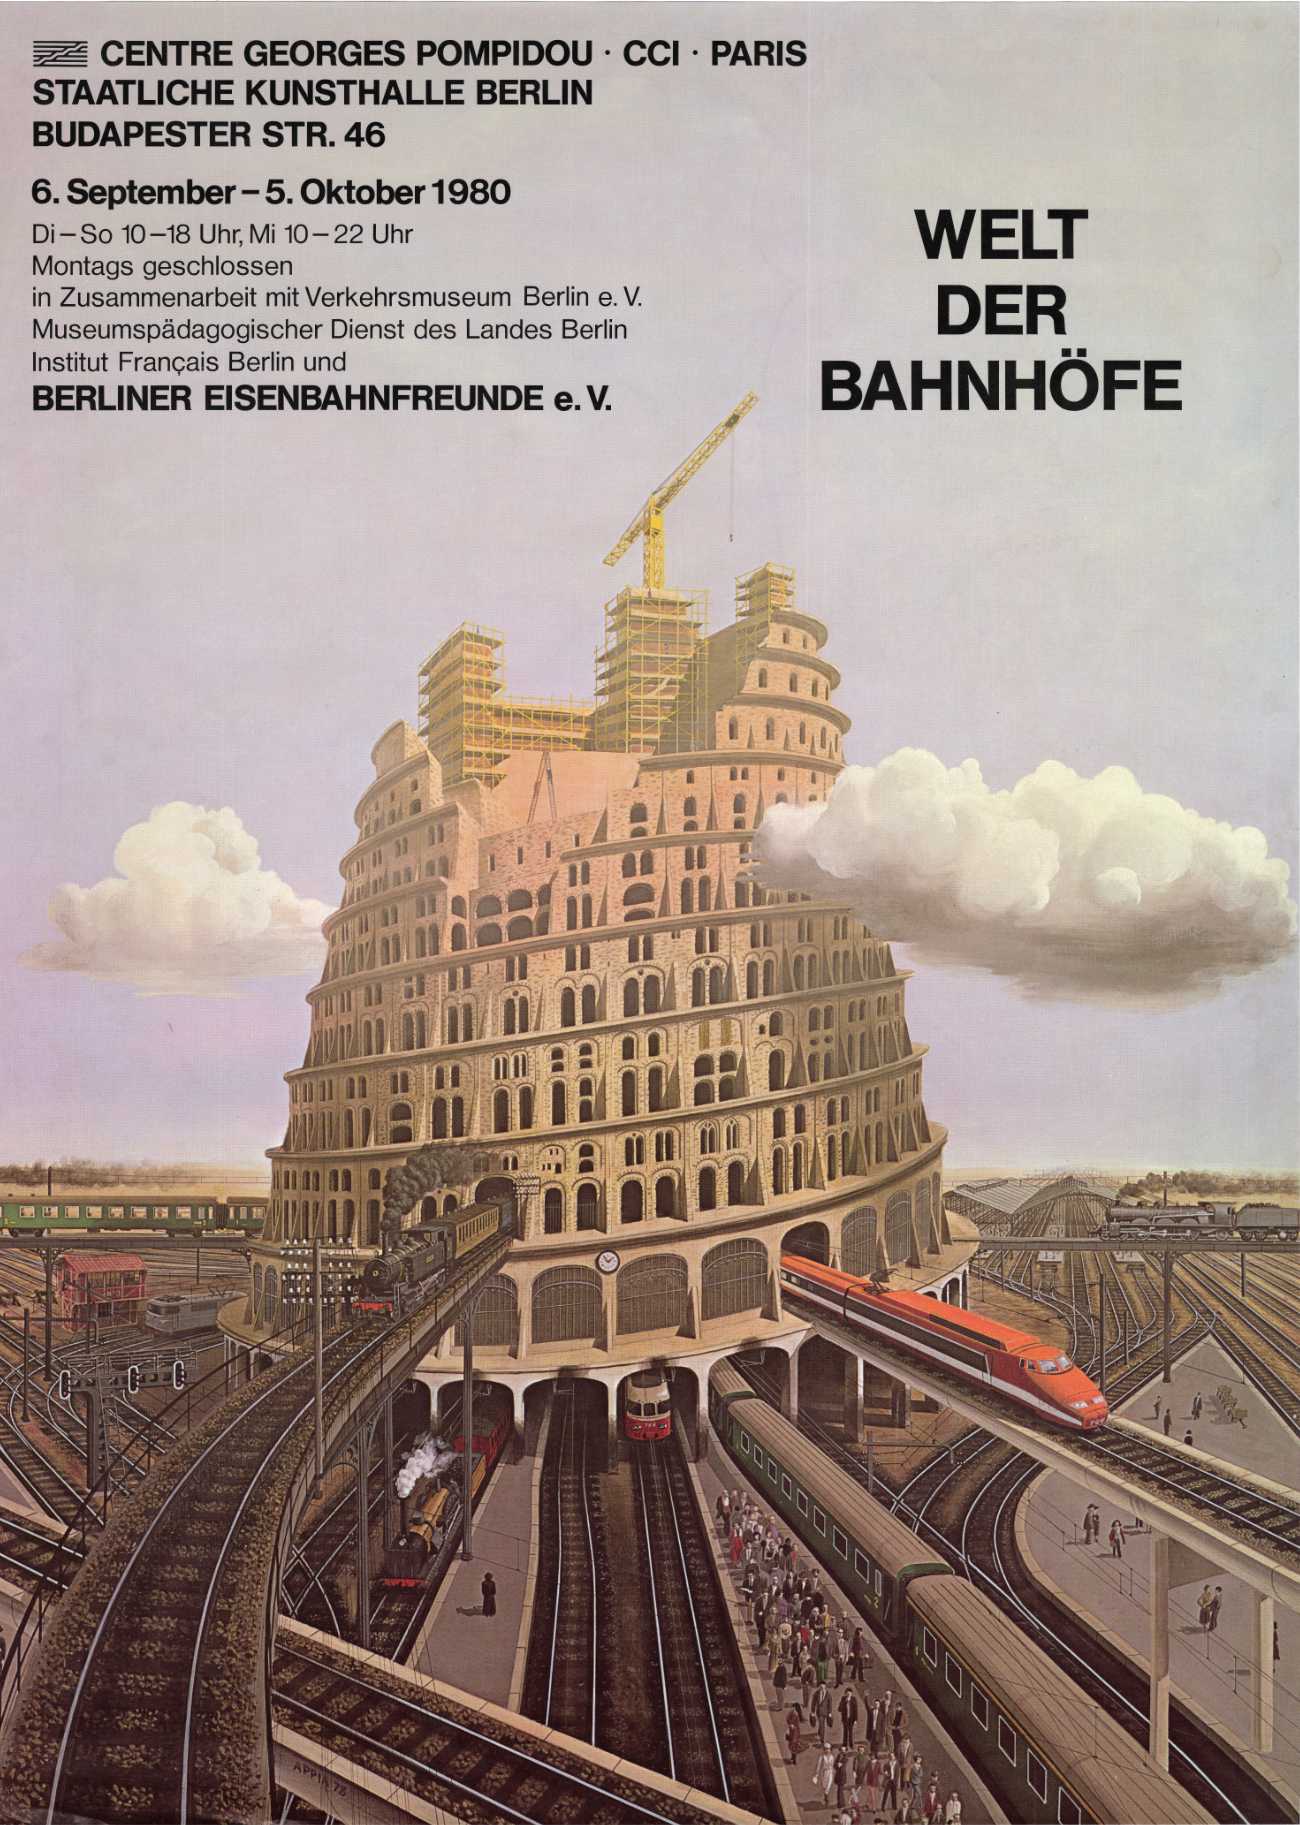 Welt der Bahnhöfe, Staatliche Kunsthalle Berlin und Eisenbahnfreunde, 1990